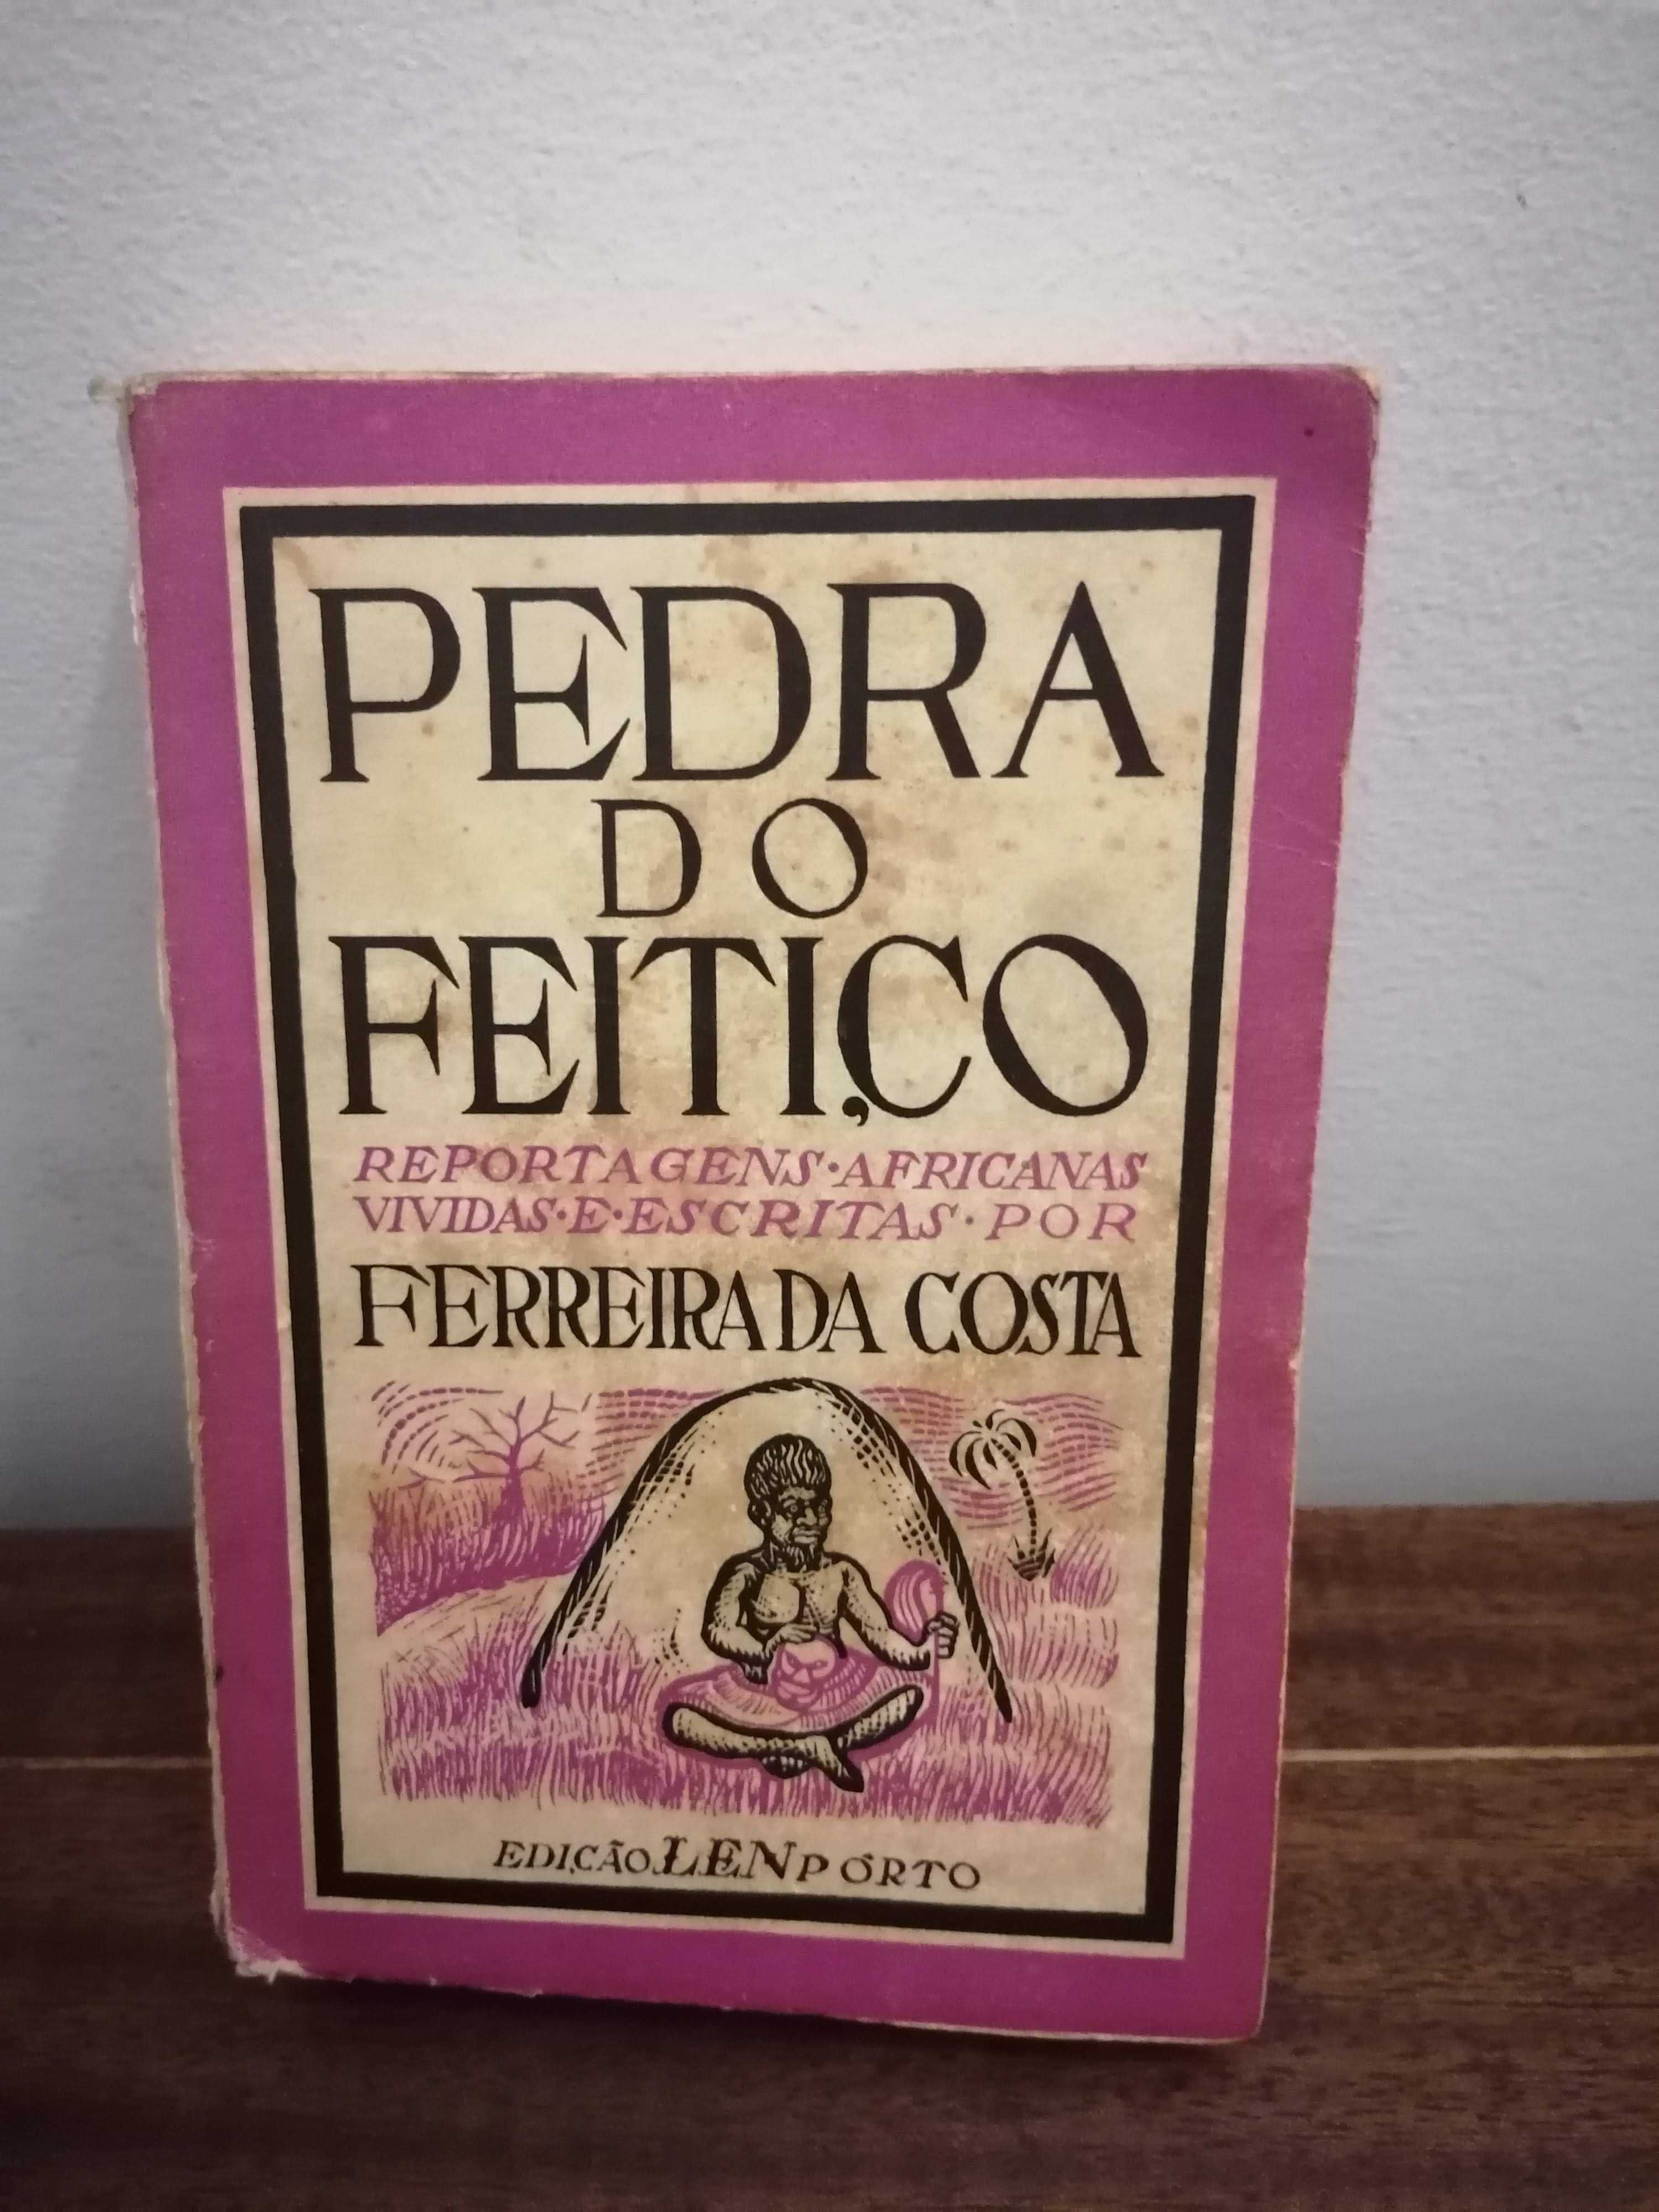 Livro “Pedra do Feitiço” de Ferreira da Costa